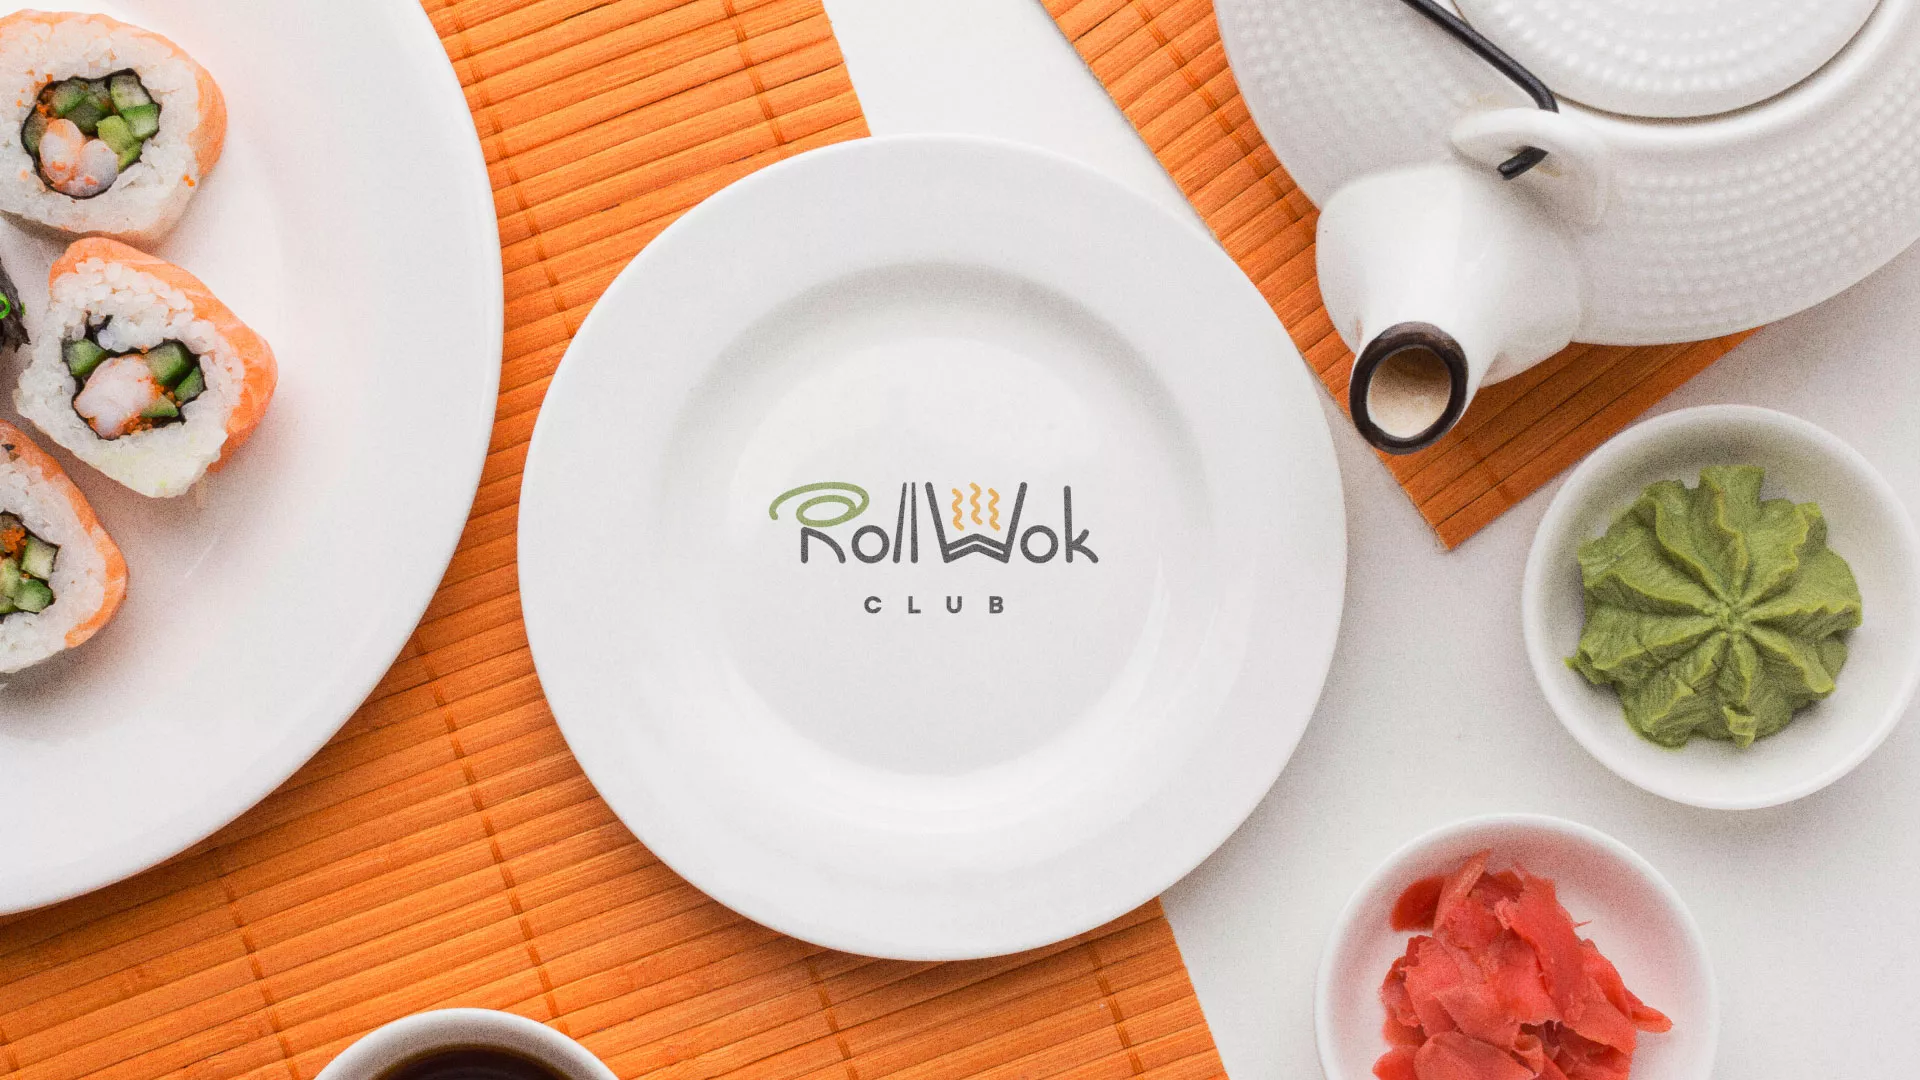 Разработка логотипа и фирменного стиля суши-бара «Roll Wok Club» в Аткарске